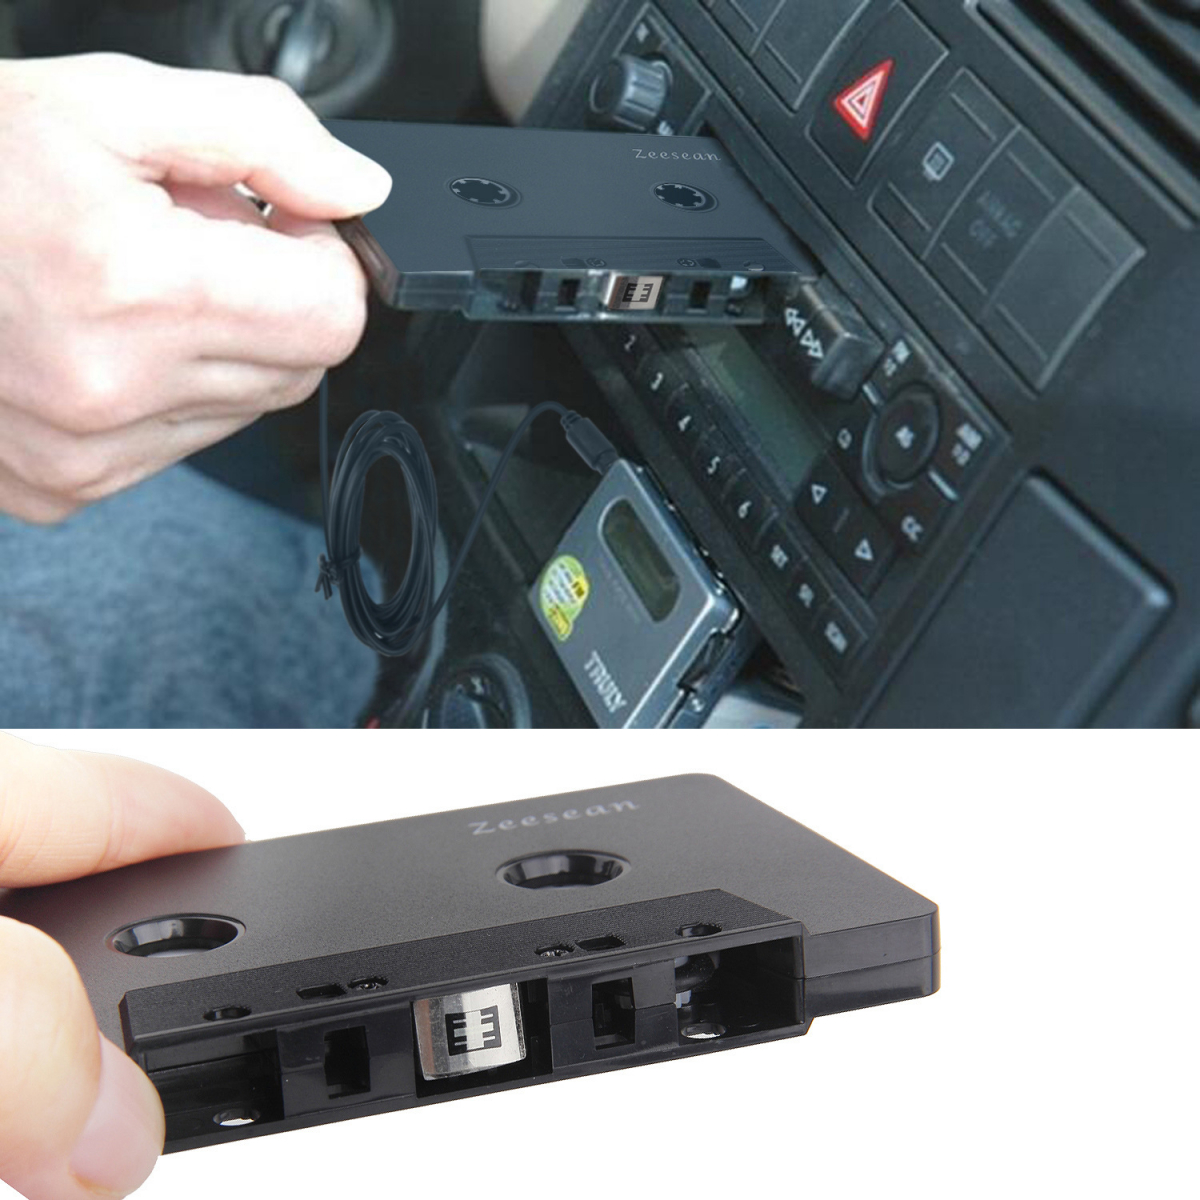 Kassettband till 3.5mm-adapter för bilstereo, svart